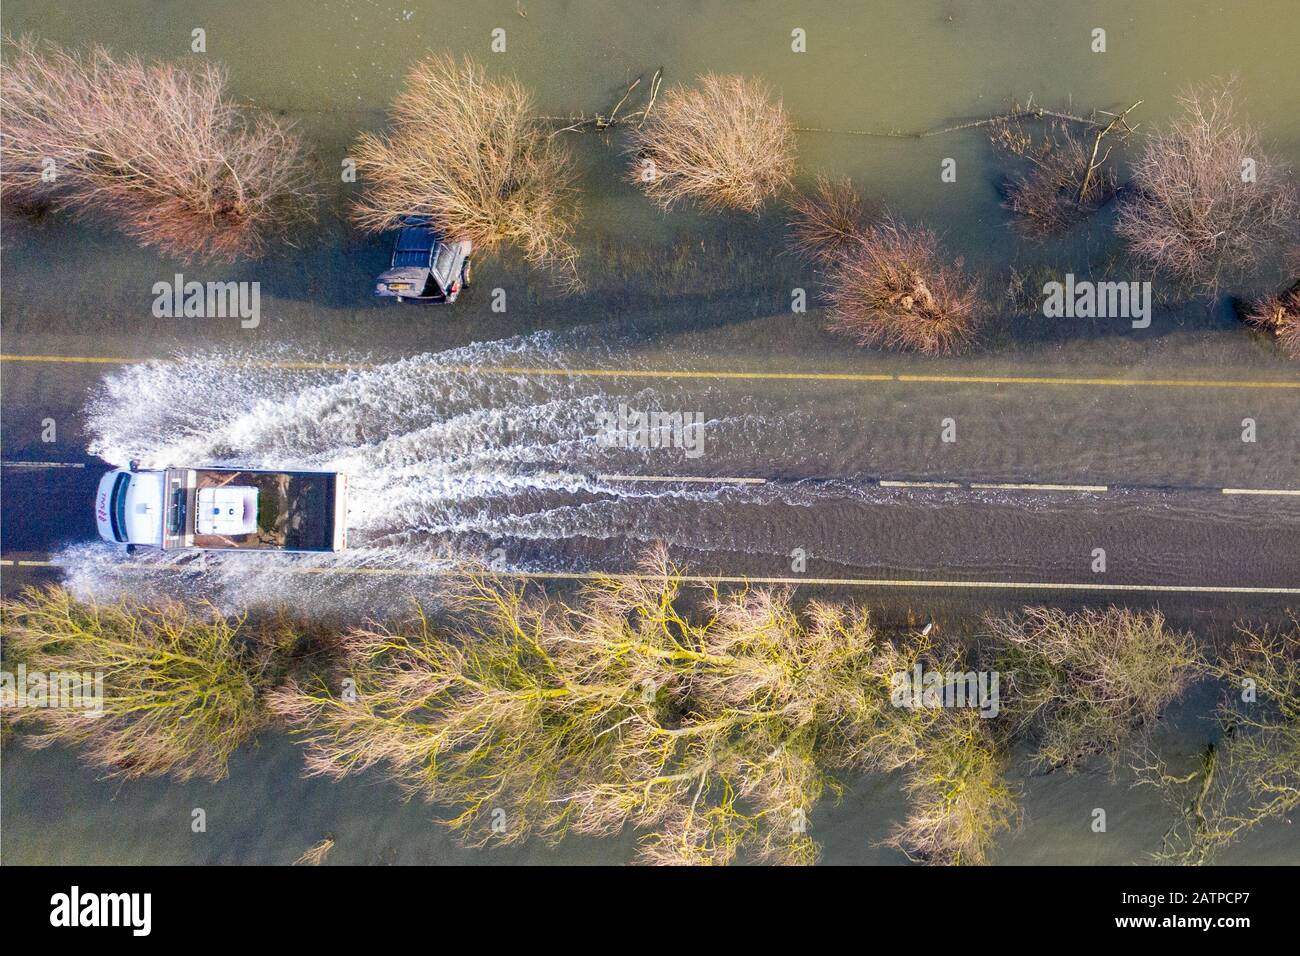 La foto datata gennaio 27th mostra un veicolo che ha guidato oltre le auto che sono state catturate sulla A1101 sul confine Cambridgeshire/Norfolk nelle recenti inondazioni e sono ora immediatamente visibili dopo che le acque alluvionali sono scese. Inondare l'acqua lungo un famigerato tratto di strada a Welney sul confine Cambridgeshire/Norfolk si è placato rivelando oggi un incredibile QUATTRO auto a trefoli (Mon). Gli automobilisti sono stati tutti presi dal lungo e tortuoso tratto di strada, che è stato allagato per due mesi. Quattro persone hanno dovuto essere salvate da una delle automobili da vigili del fuoco dopo che è stato catturato a Welney Wash su Janu Foto Stock